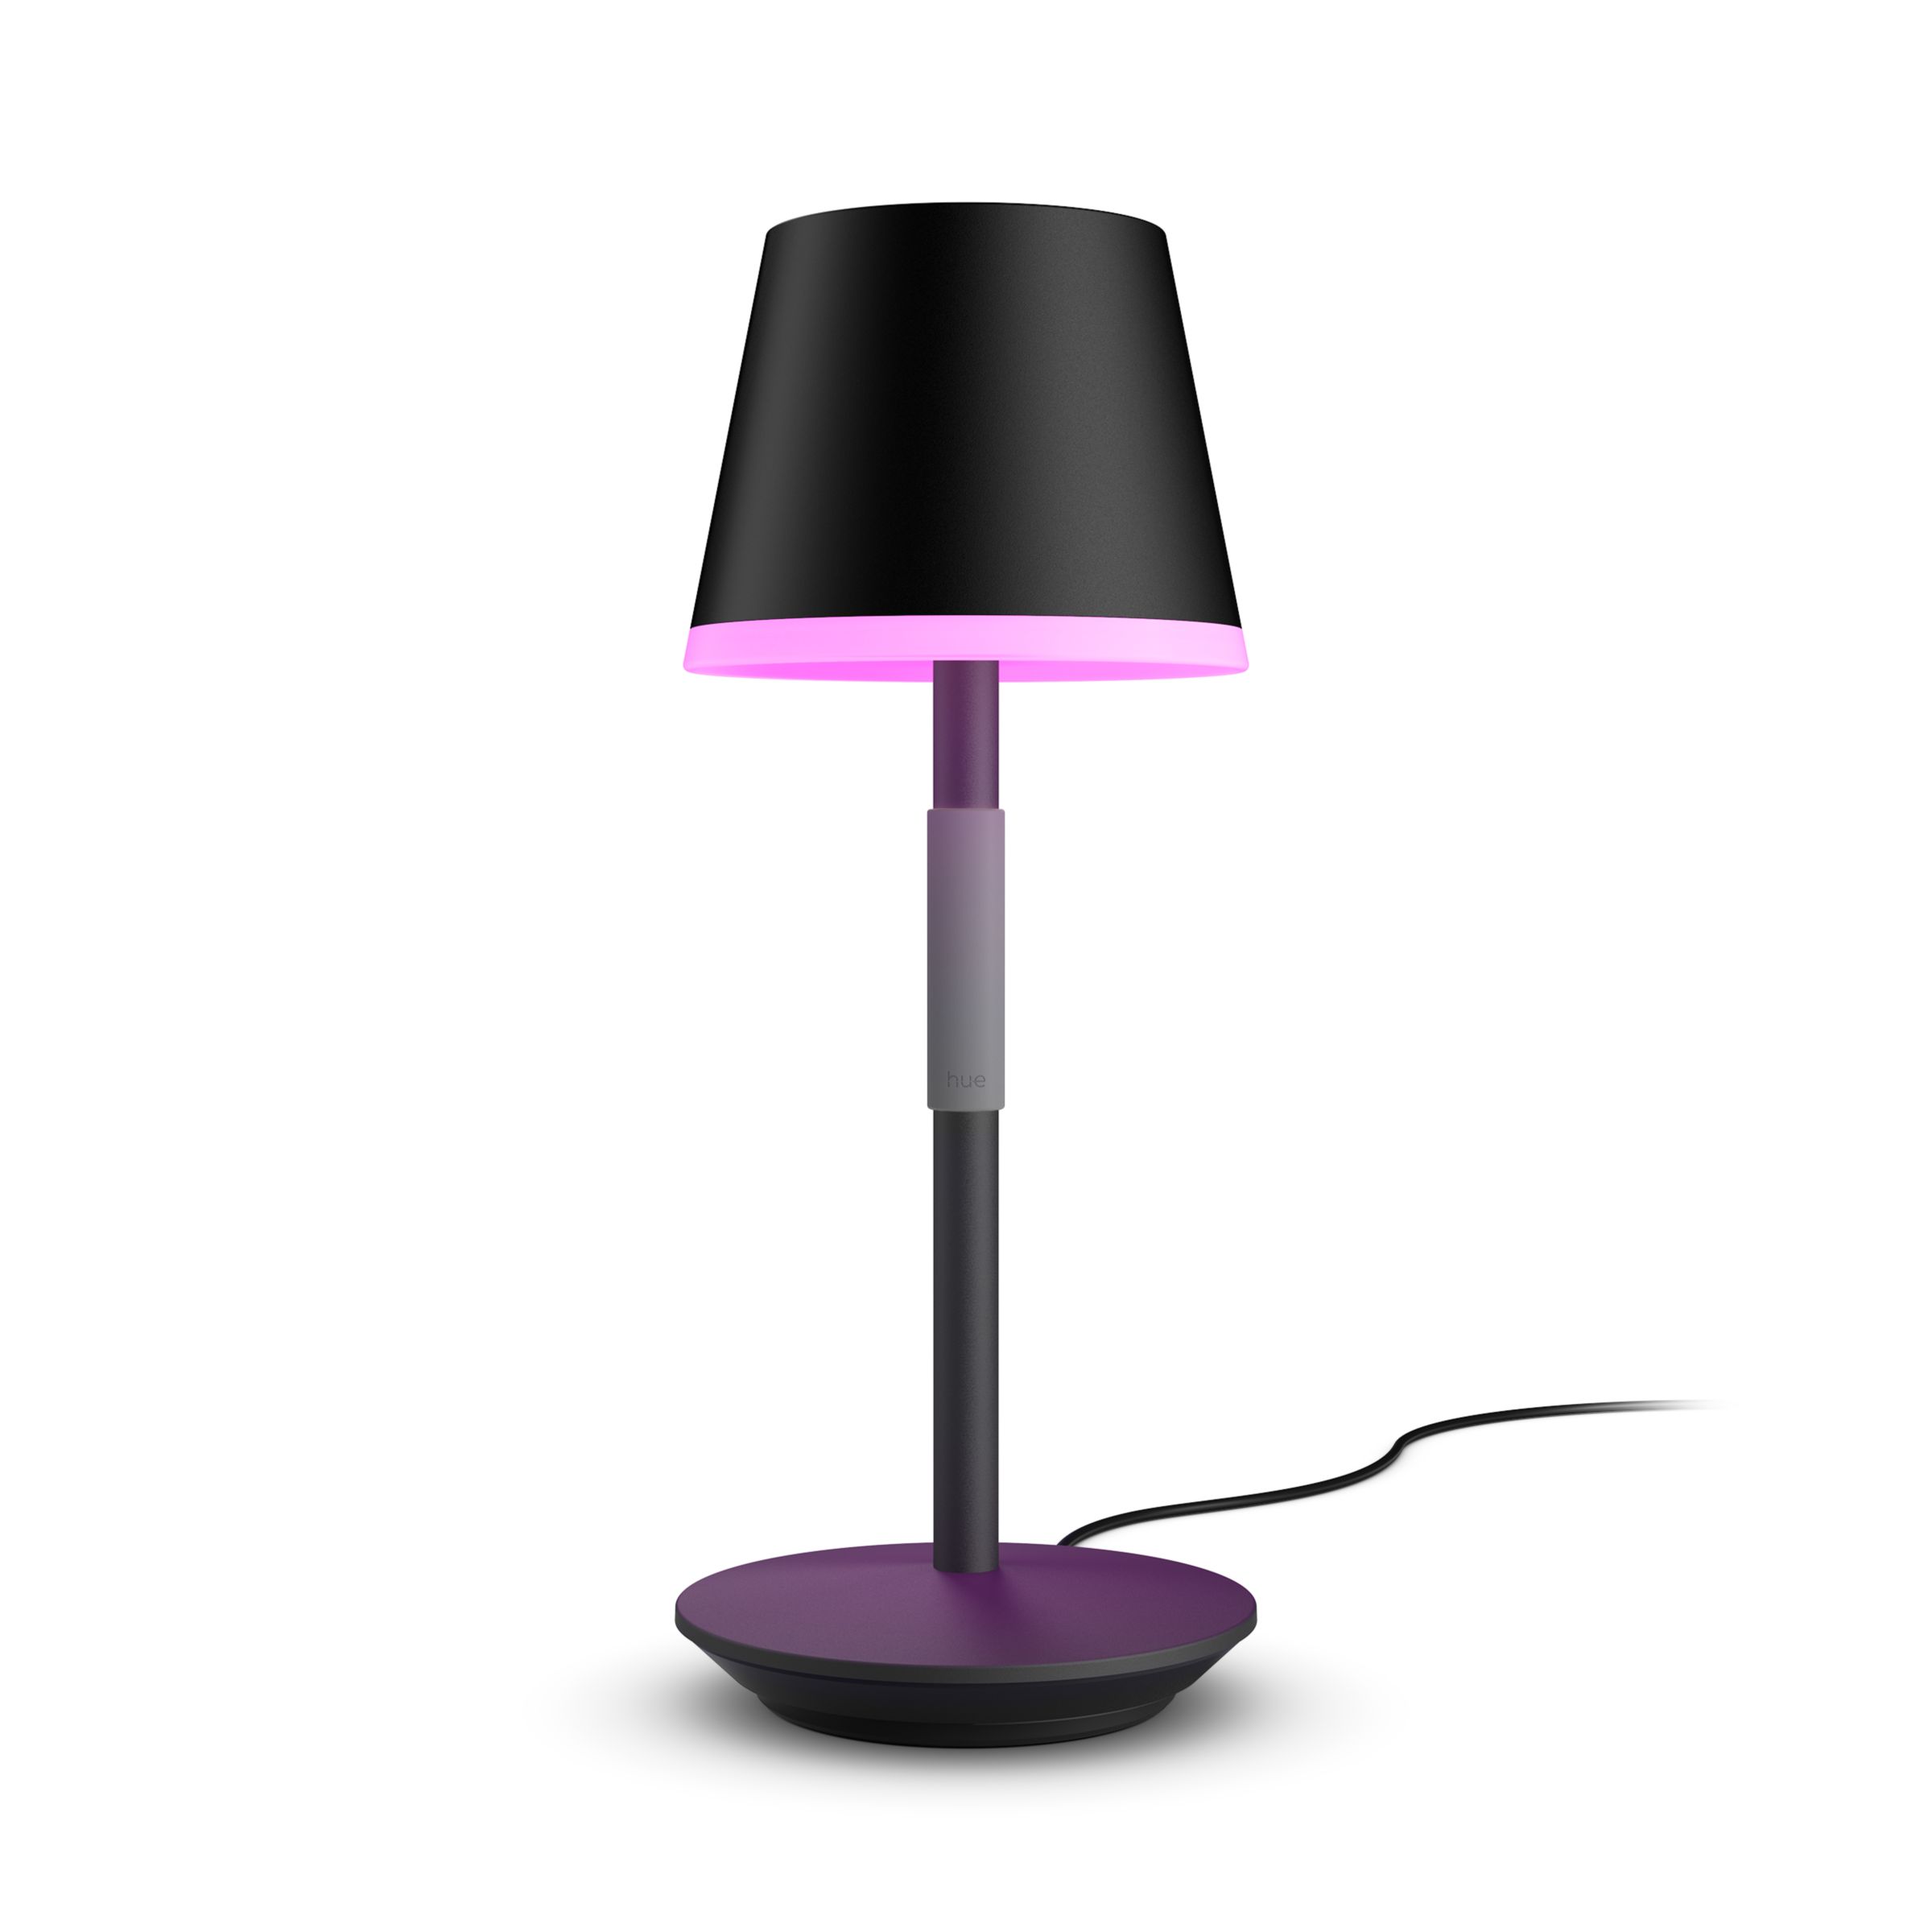 Bourgeon inhoud Van streek Hue Go portable table lamp | Philips Hue US